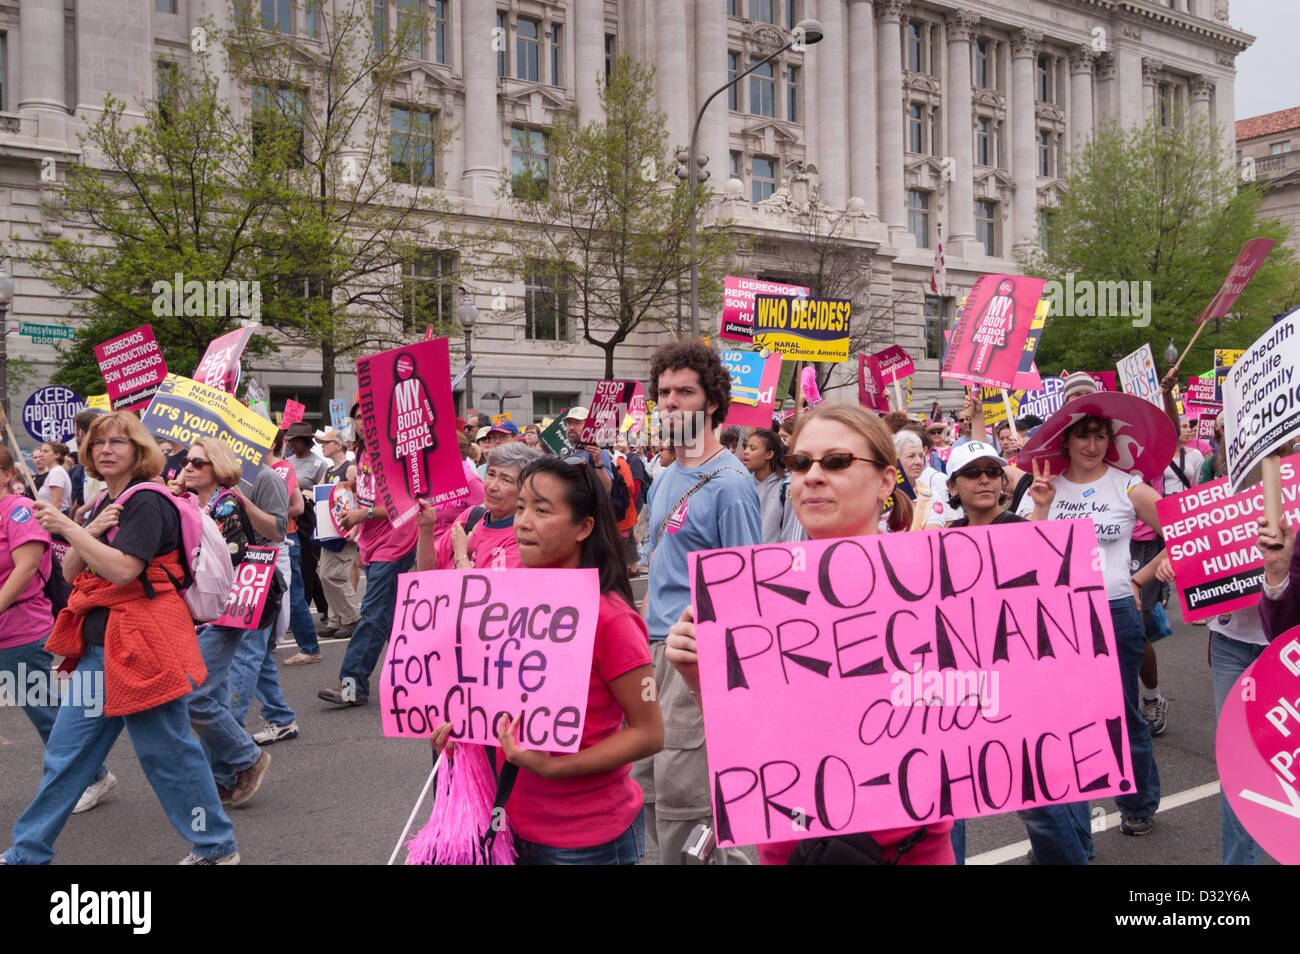 Gran pro-elección, los derechos de la mujer, Planned Parenthood rally y protesta en Washington, D.C. Foto de stock